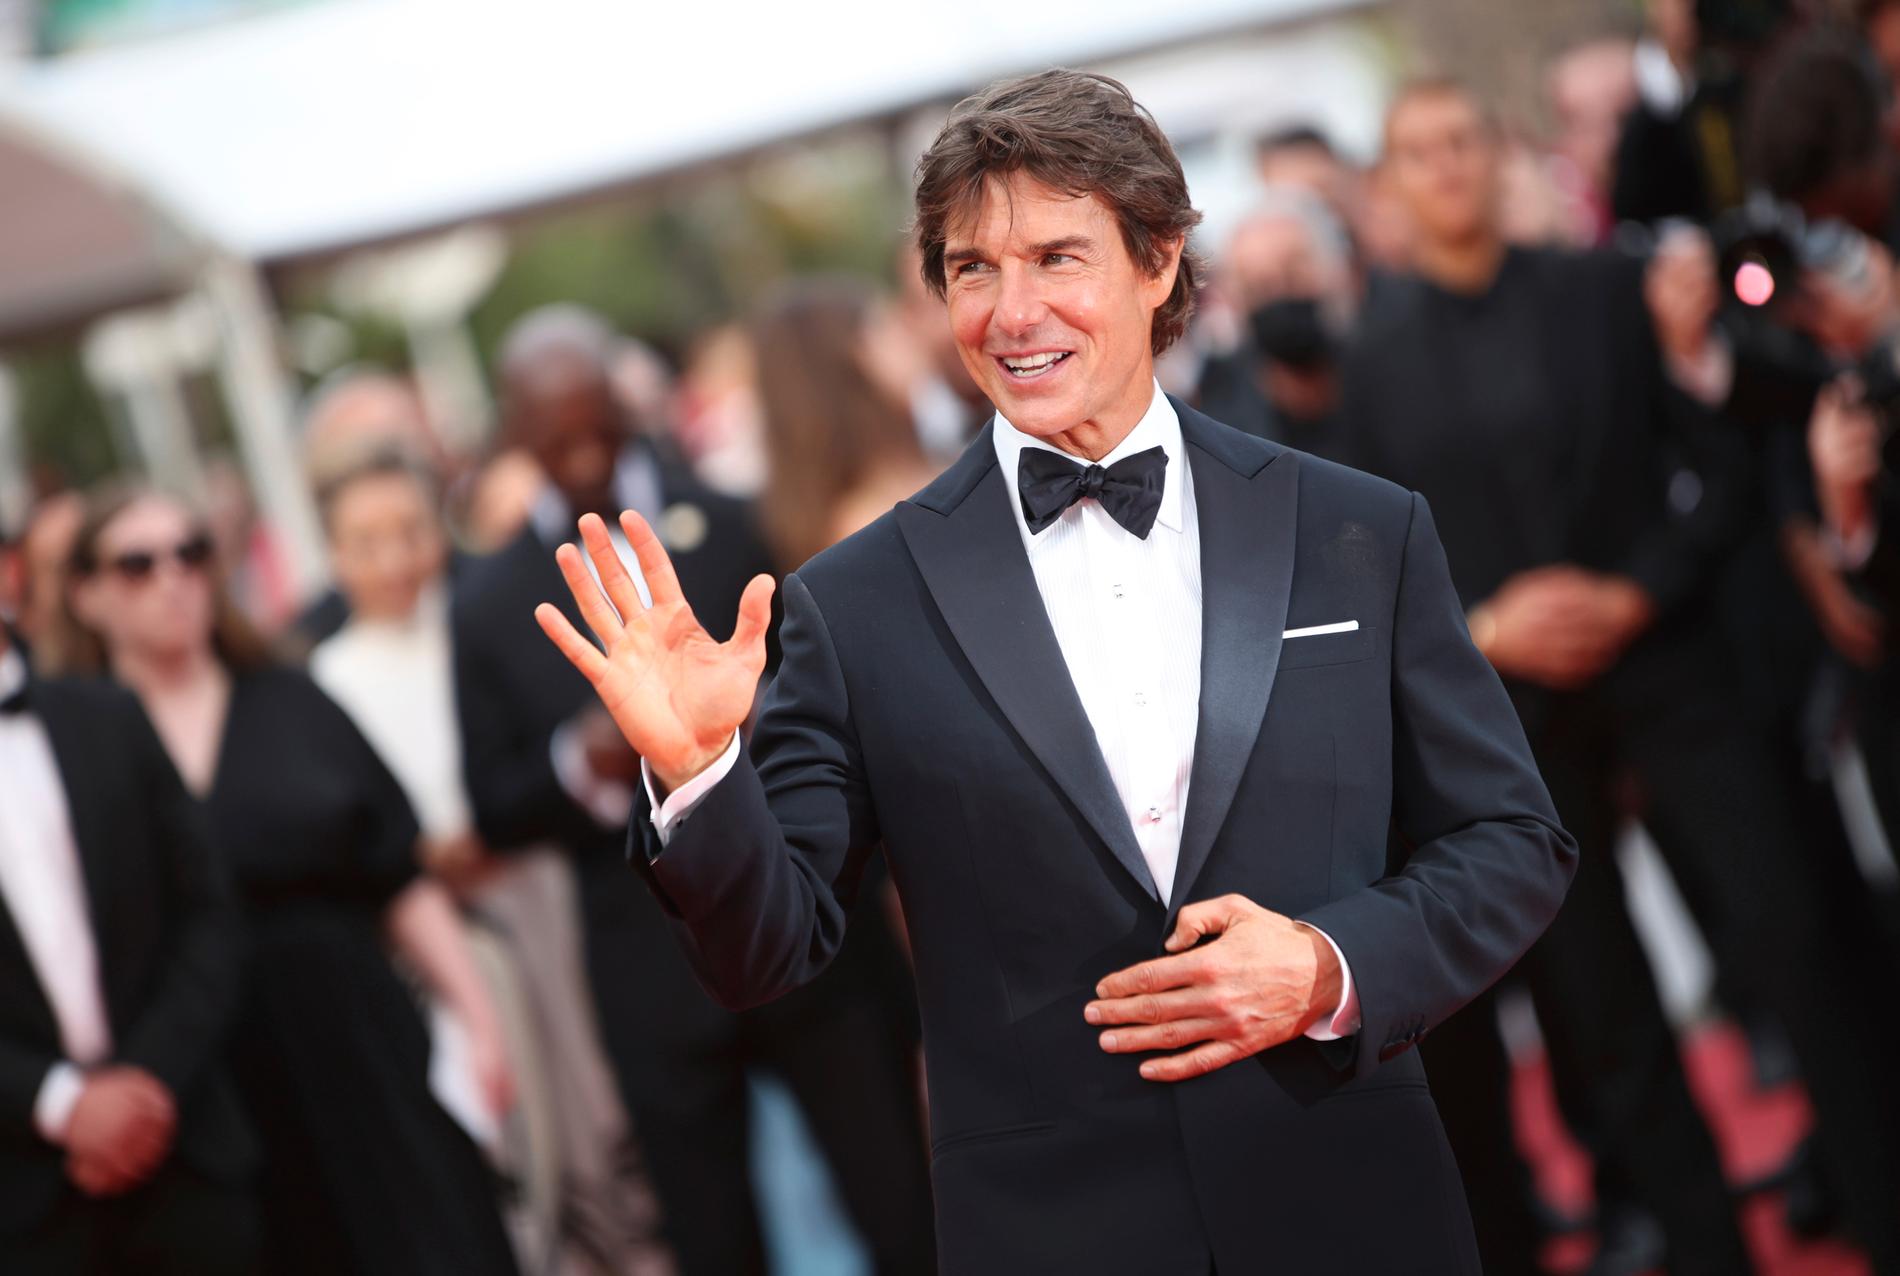 "Allt jag gör är för publiken. Det är ni som har gjort mitt liv", sade Tom Cruise när han hyllades i Cannes inför galapremiären av "Top Gun: Maverick".